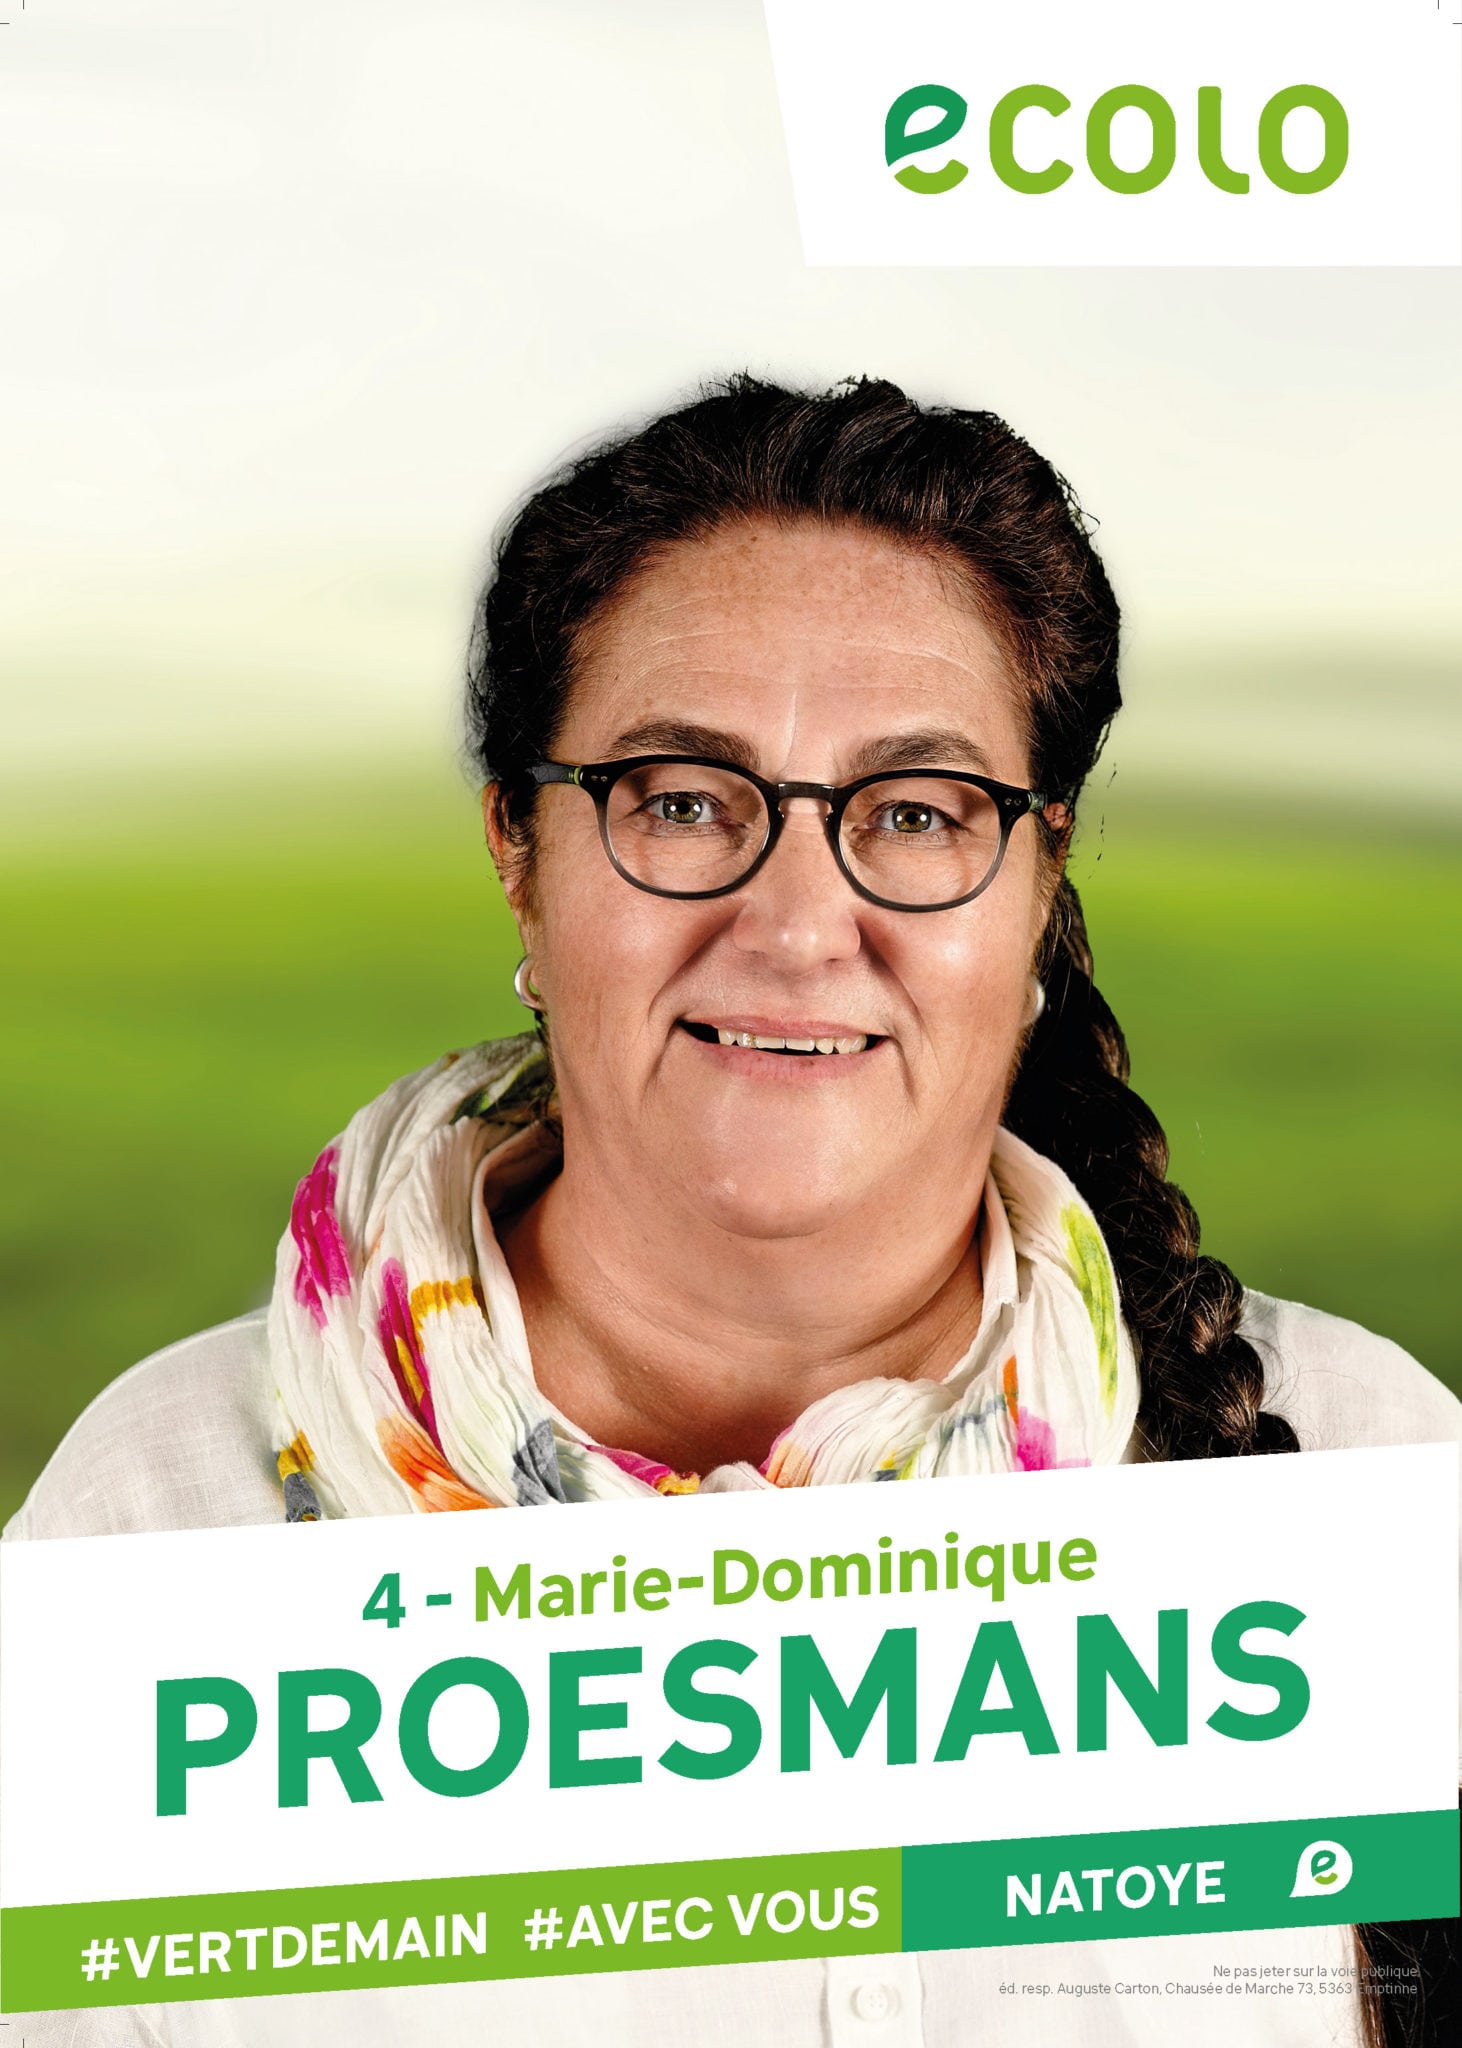 4 - Marie-Dominique PROESMANS